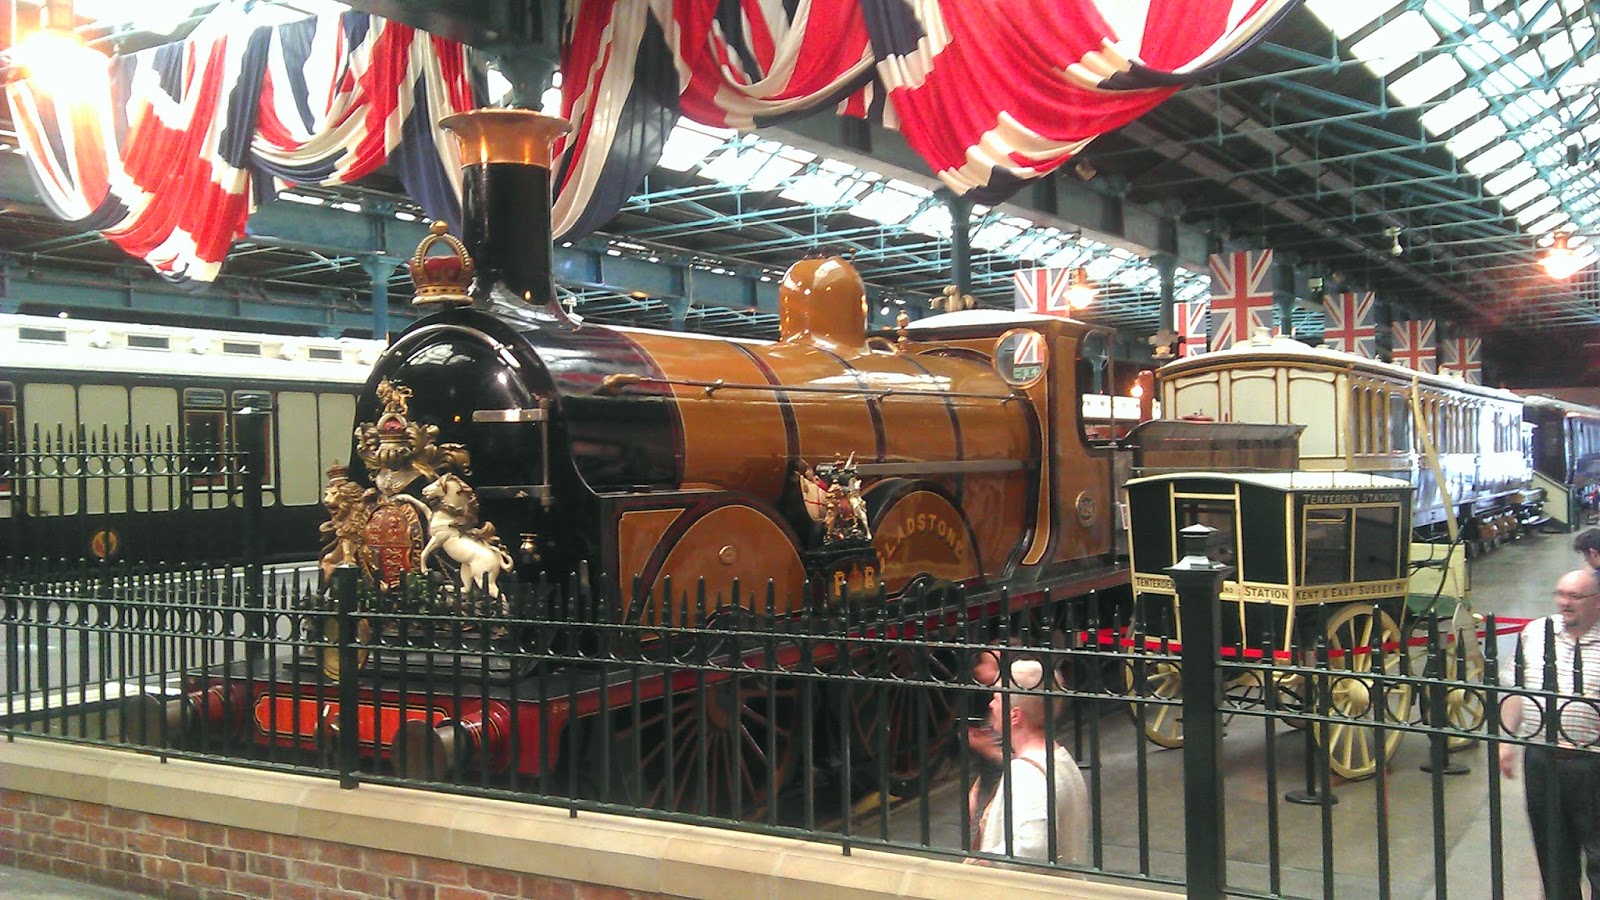 Viajes con Historia: York, la reina del norte - Vagón de la reina Victoria y una de las locomotoras del modelo que solía arrastrarlo, en el National Railway Museum